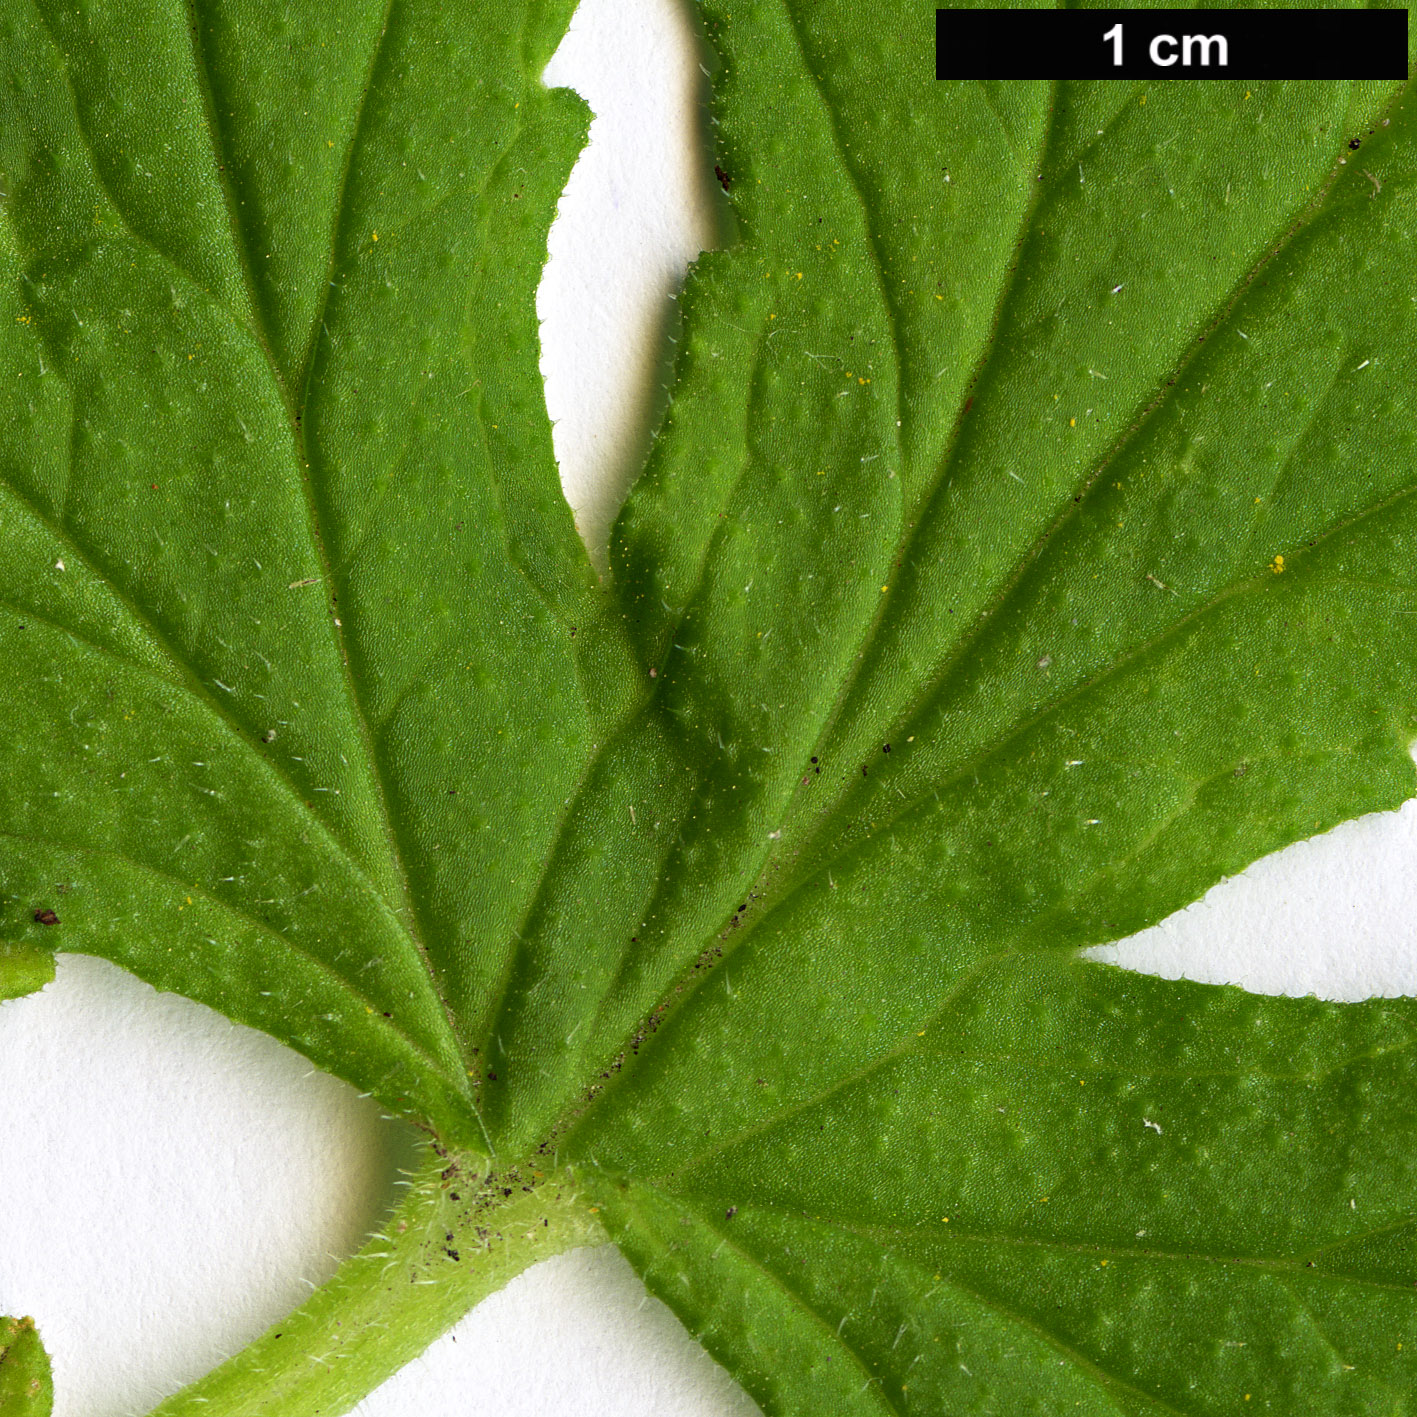 High resolution image: Family: Geraniaceae - Genus: Pelargonium - Taxon: graveolens